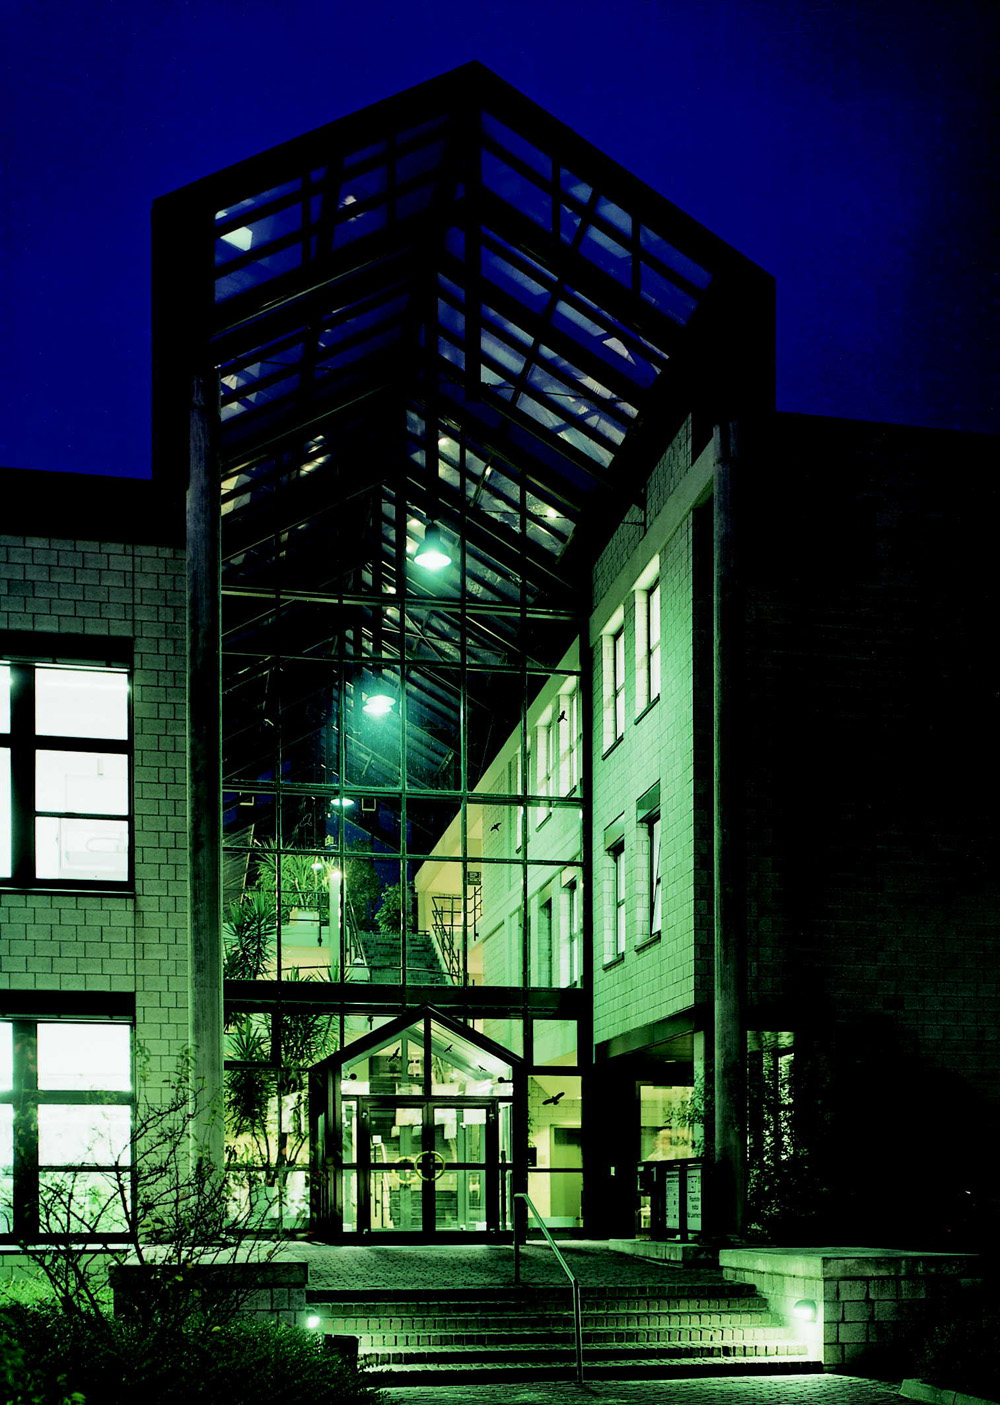 Entrance Fraunhofer Institute for Laser Technology ILT, Aachen